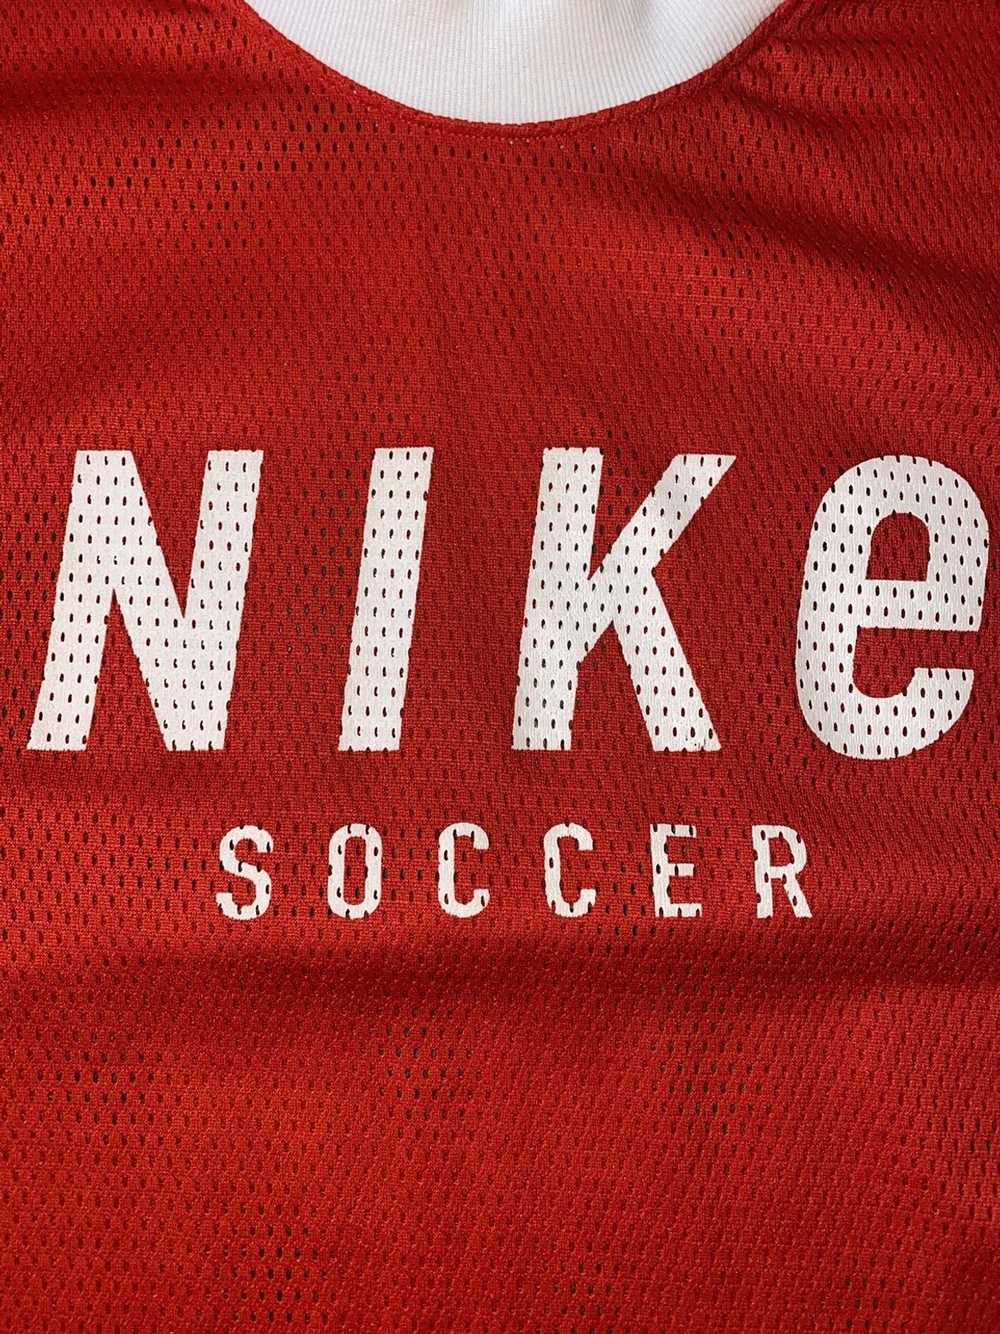 Nike × Vintage Vintage 90s Nike Soccer Shirt - image 2